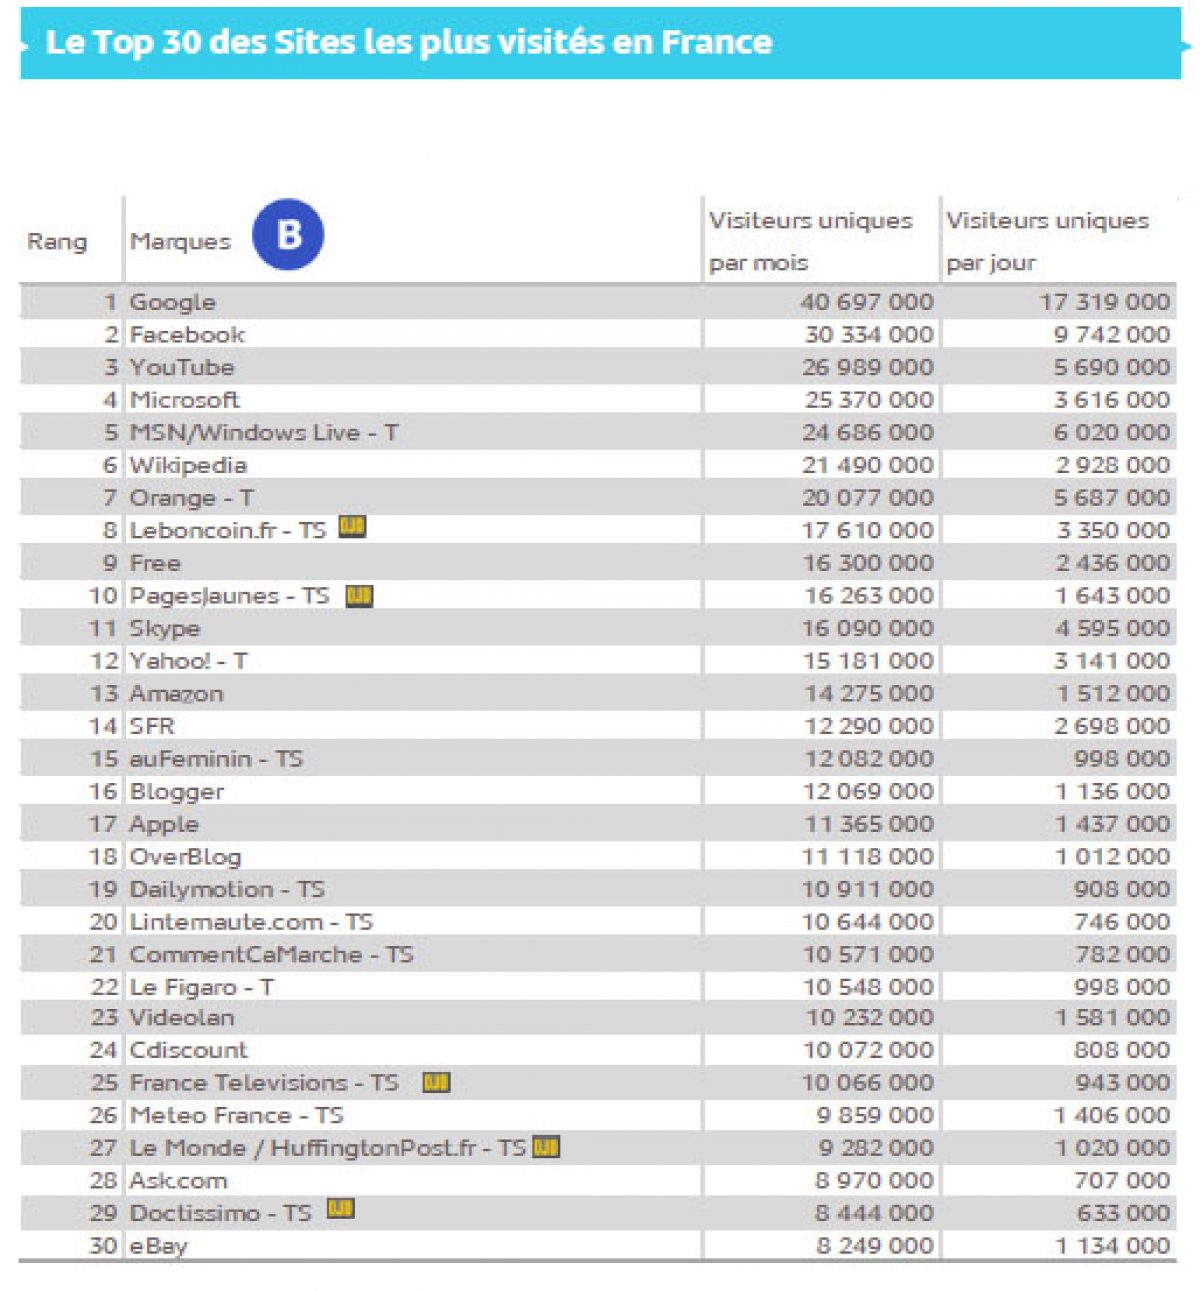 Le TOP 30 des sites Internet les plus visités de France en juin